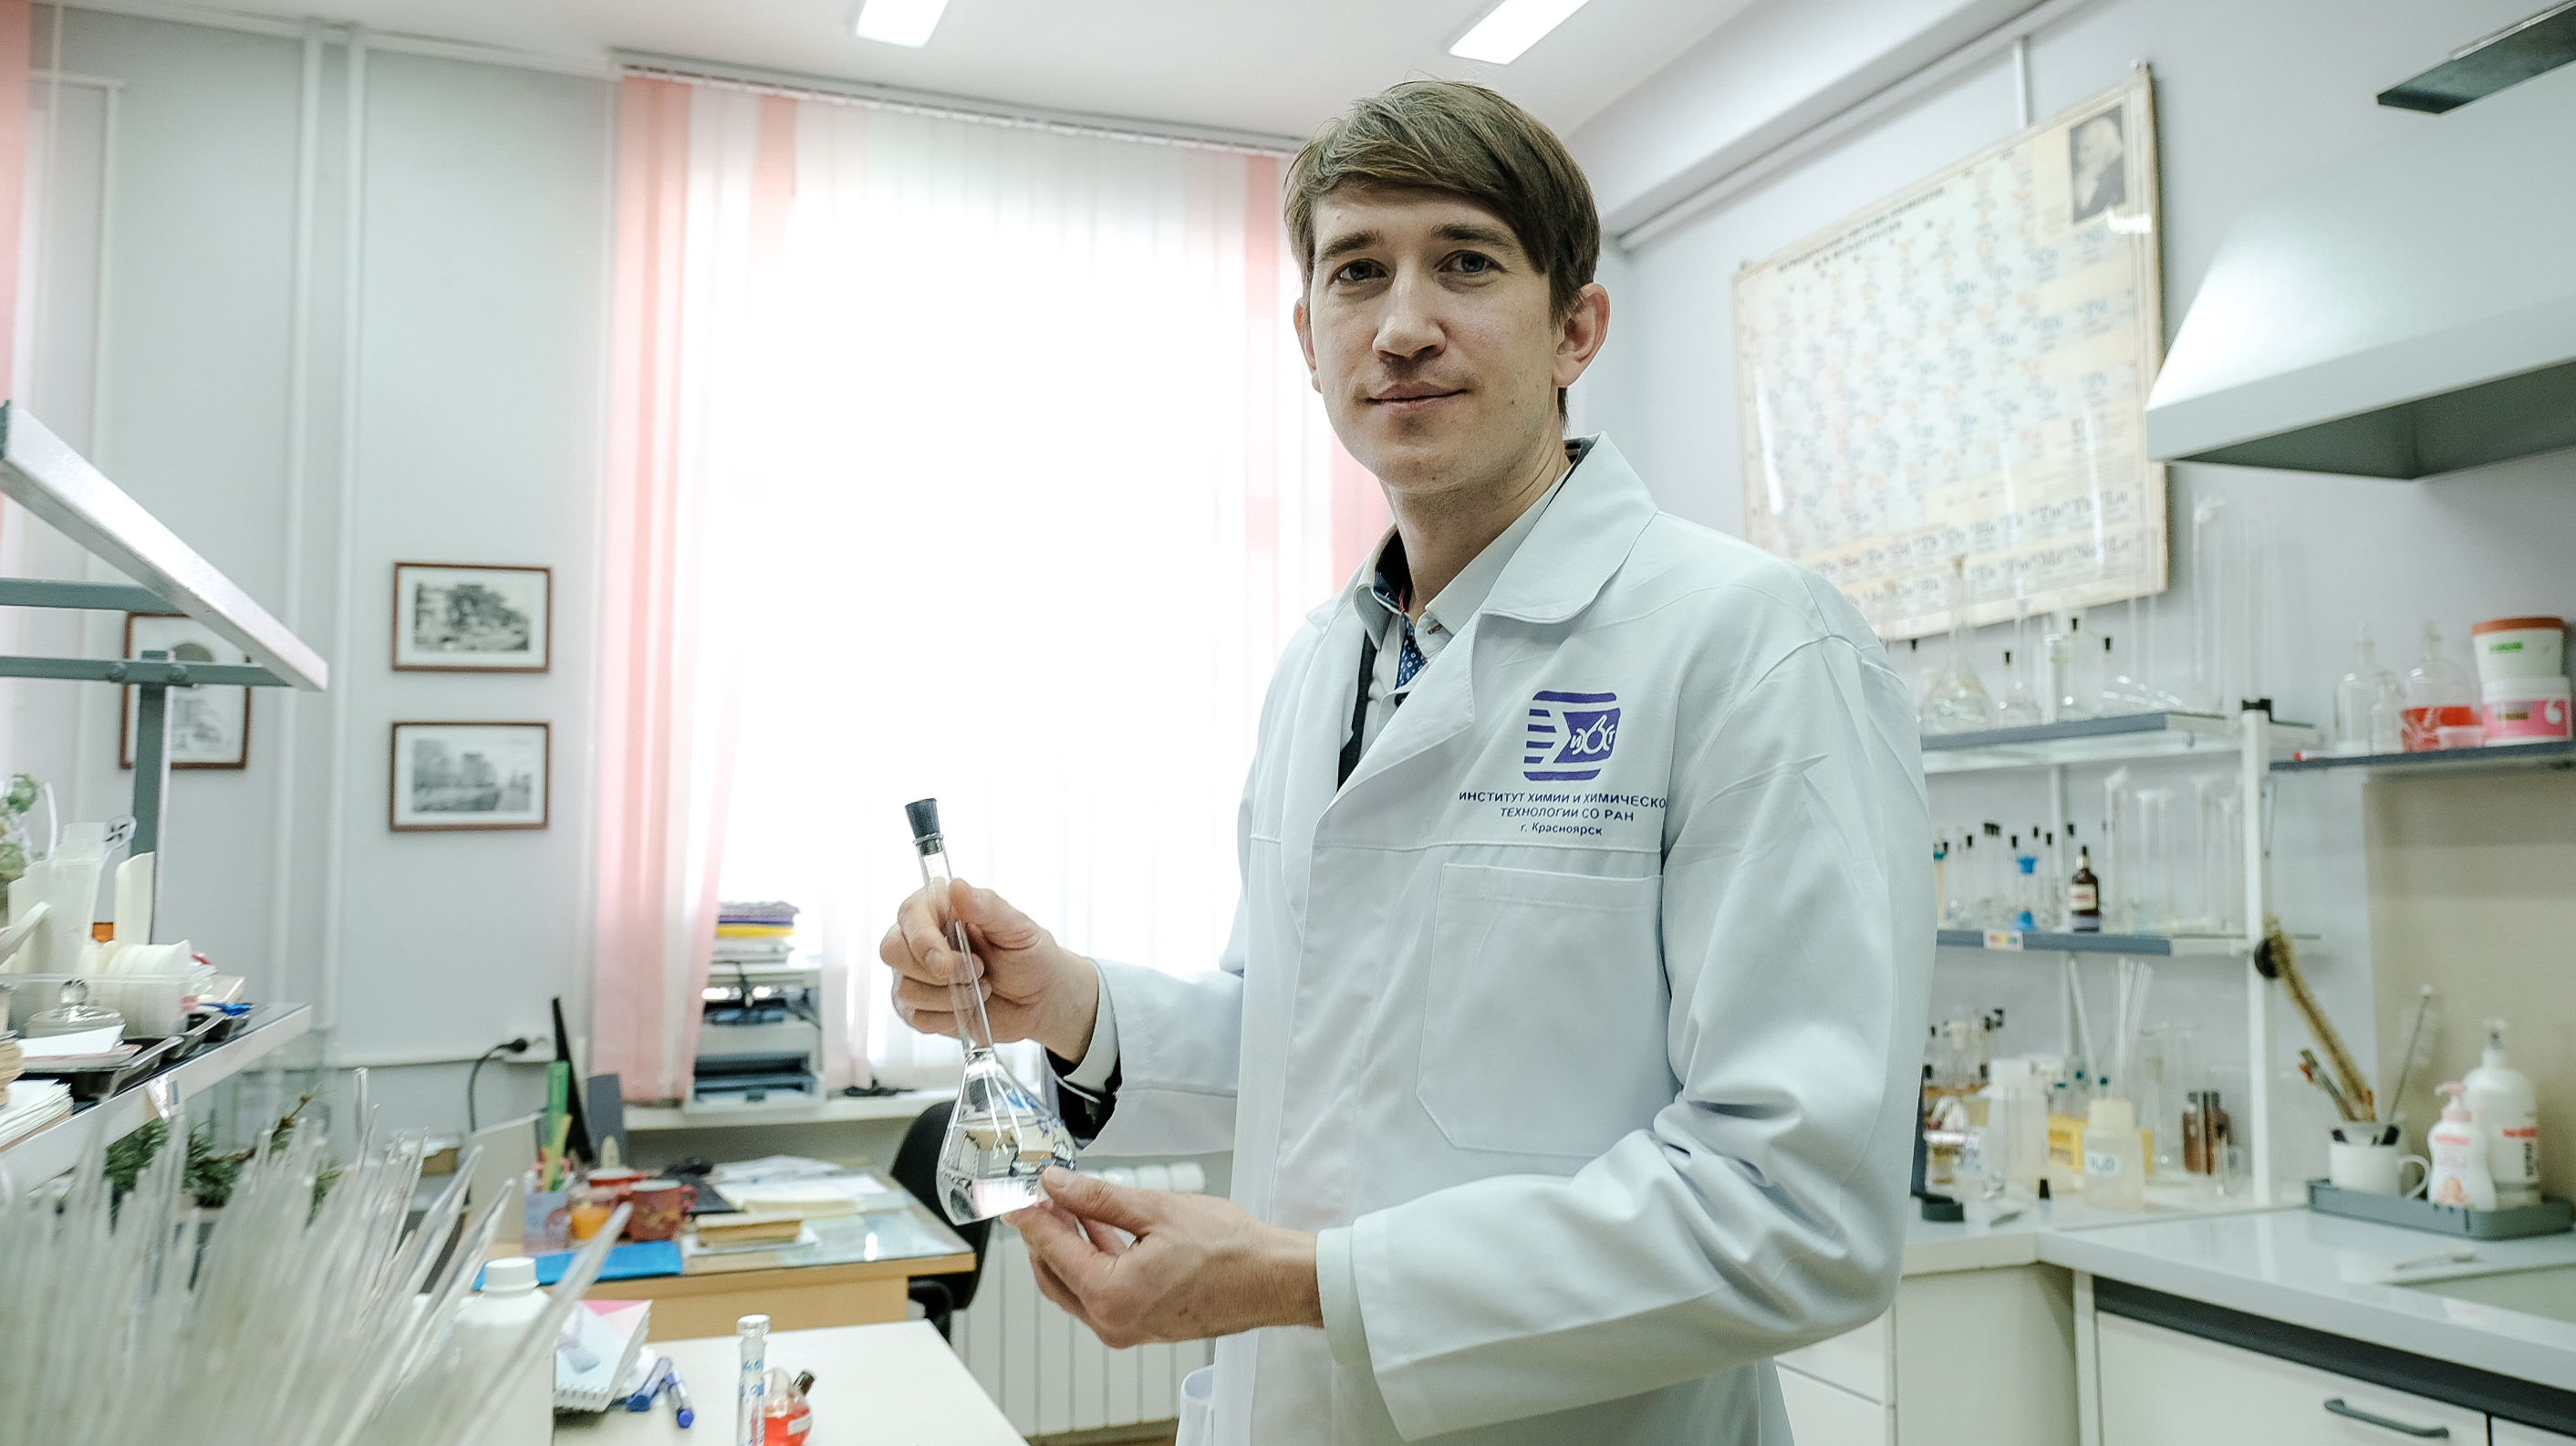 Сергей Воробьев, кандидат химических наук, научный сотрудник Института химии и химической технологии СО РАН